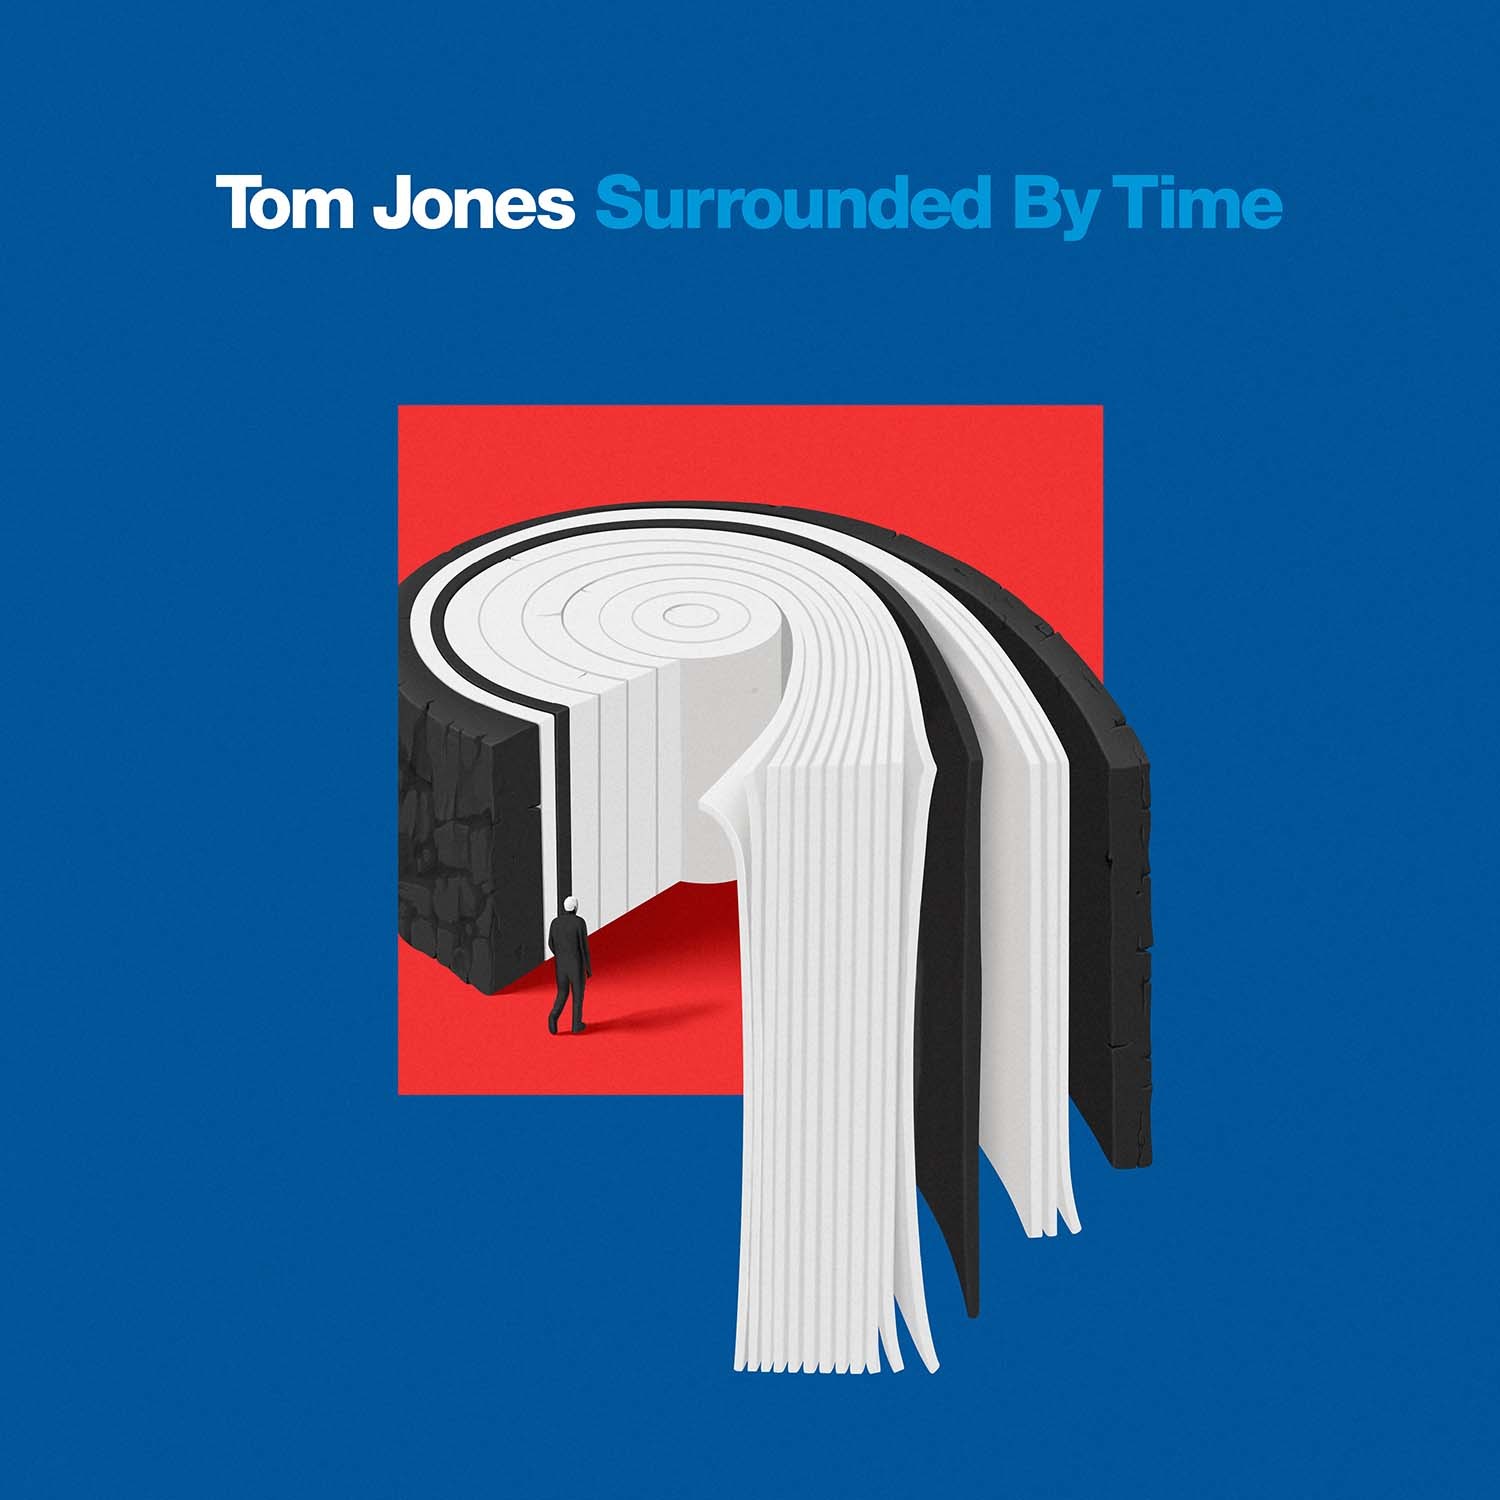 غلاف ألبوم توم جونز الجديد